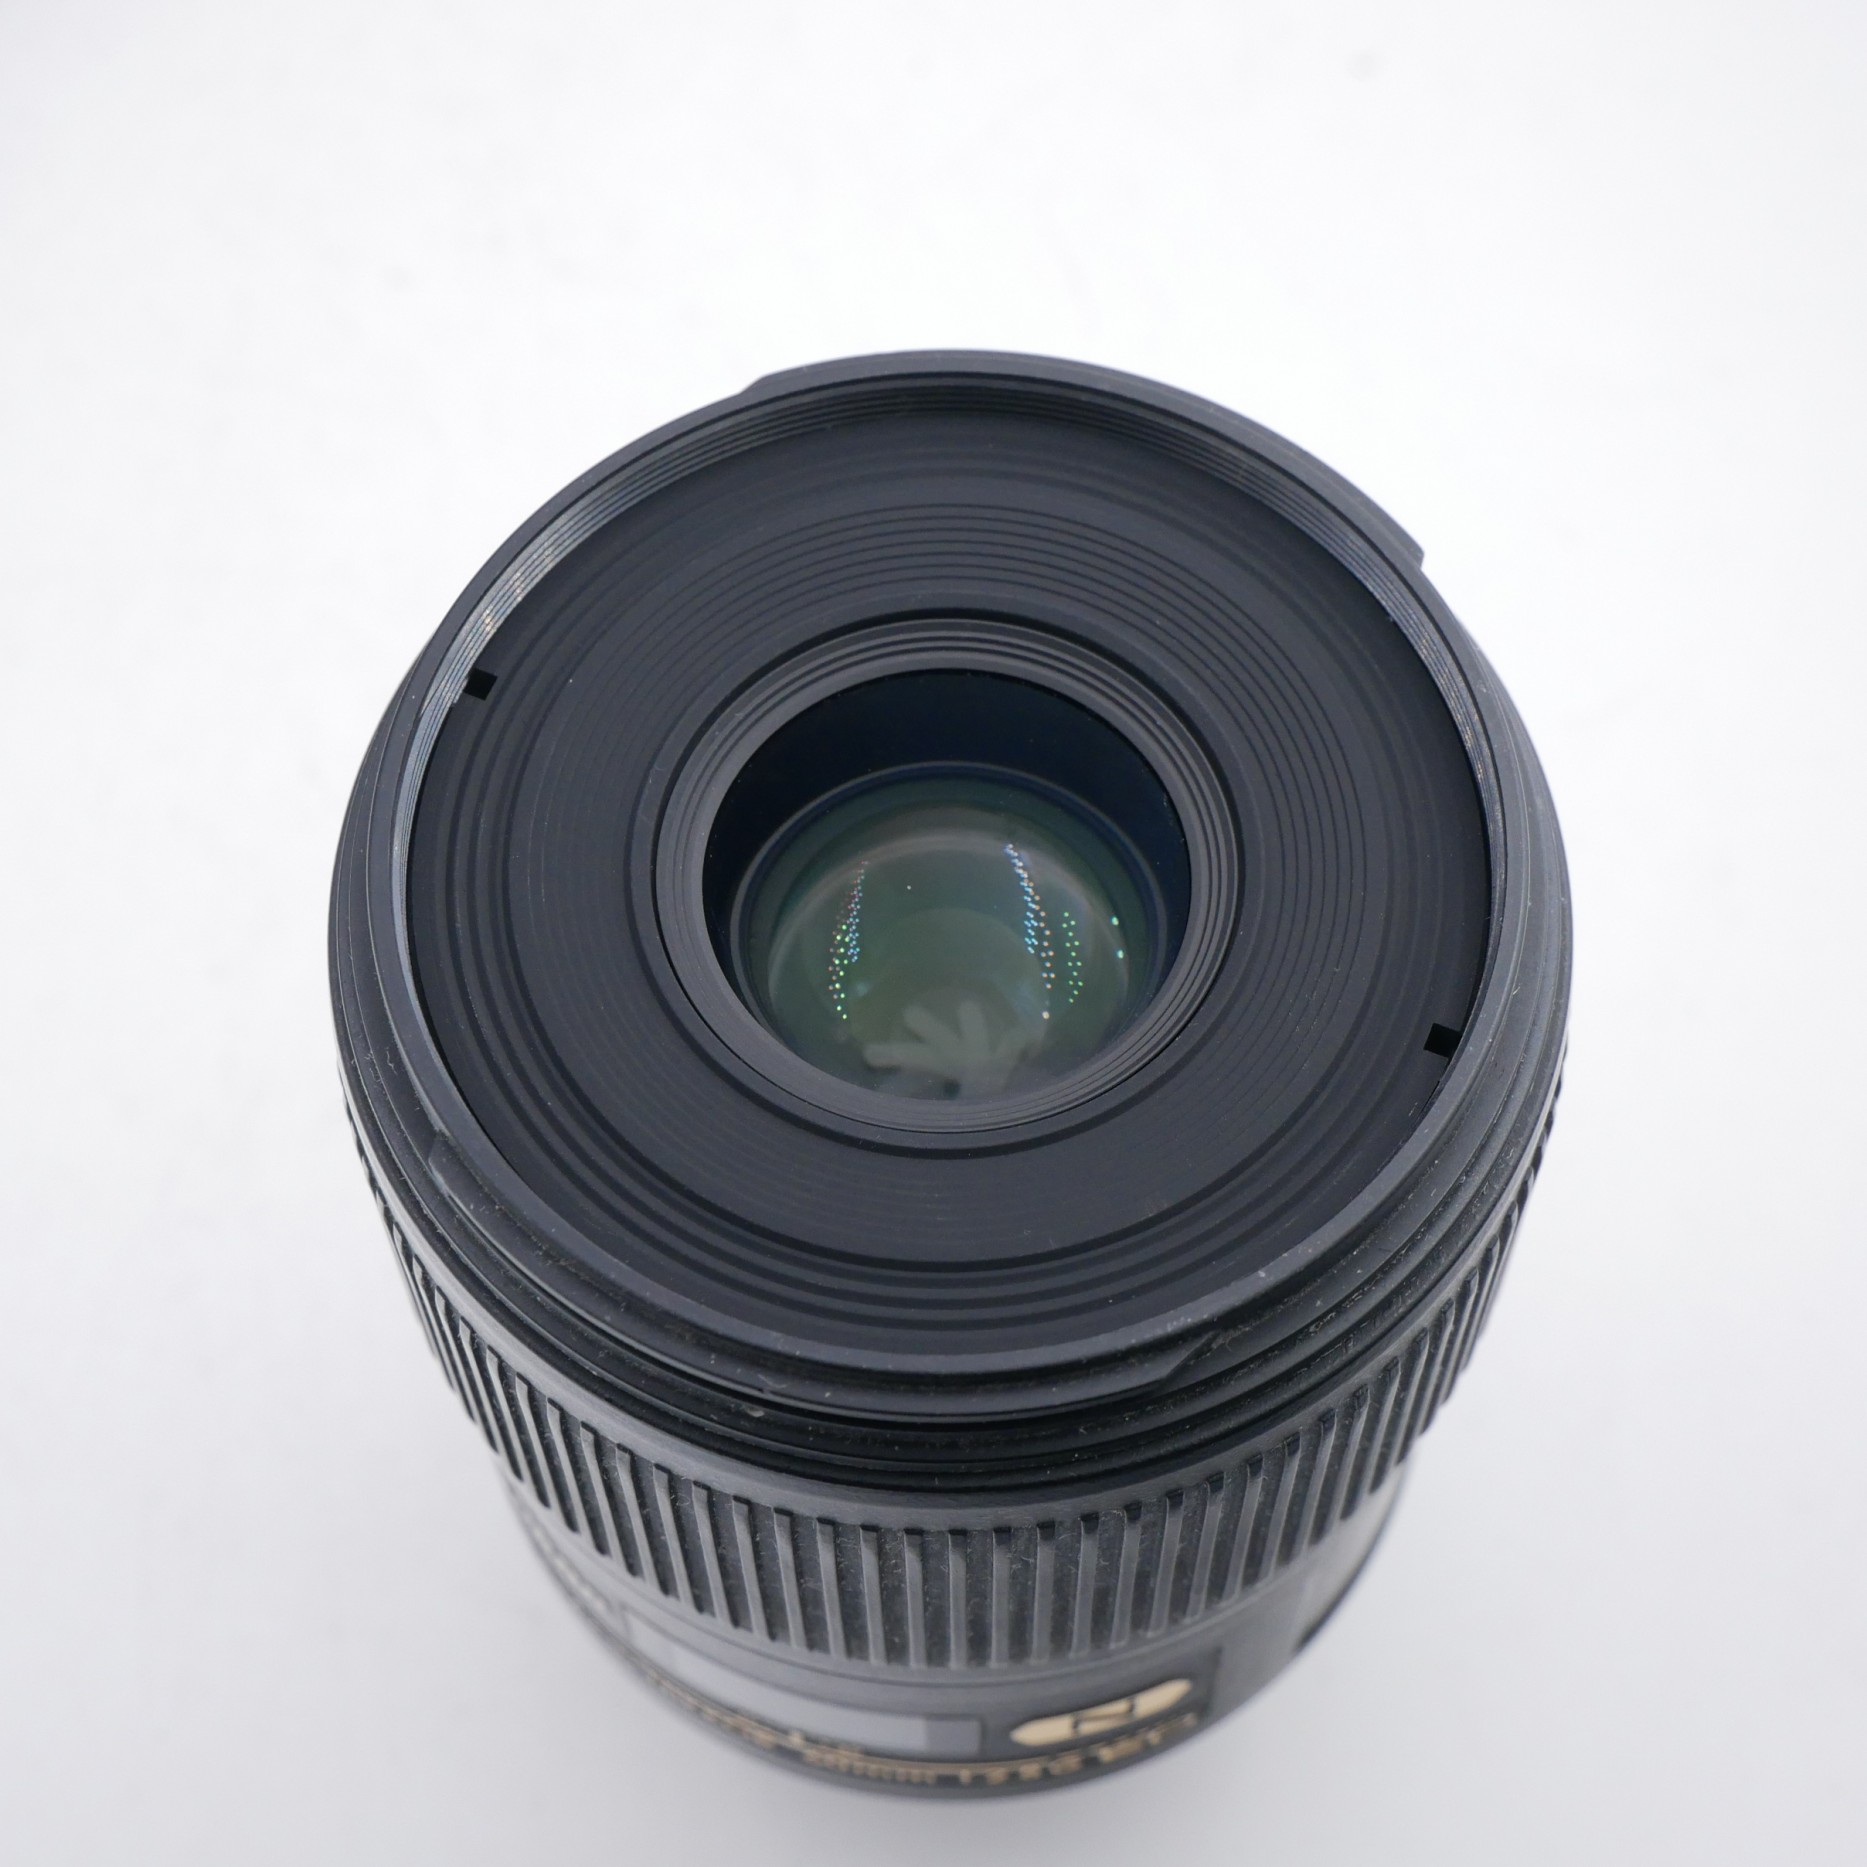 S-H-XMSWJH_2.jpg - Nikon AF-S 60mm F2.8 G ED Micro Lens 